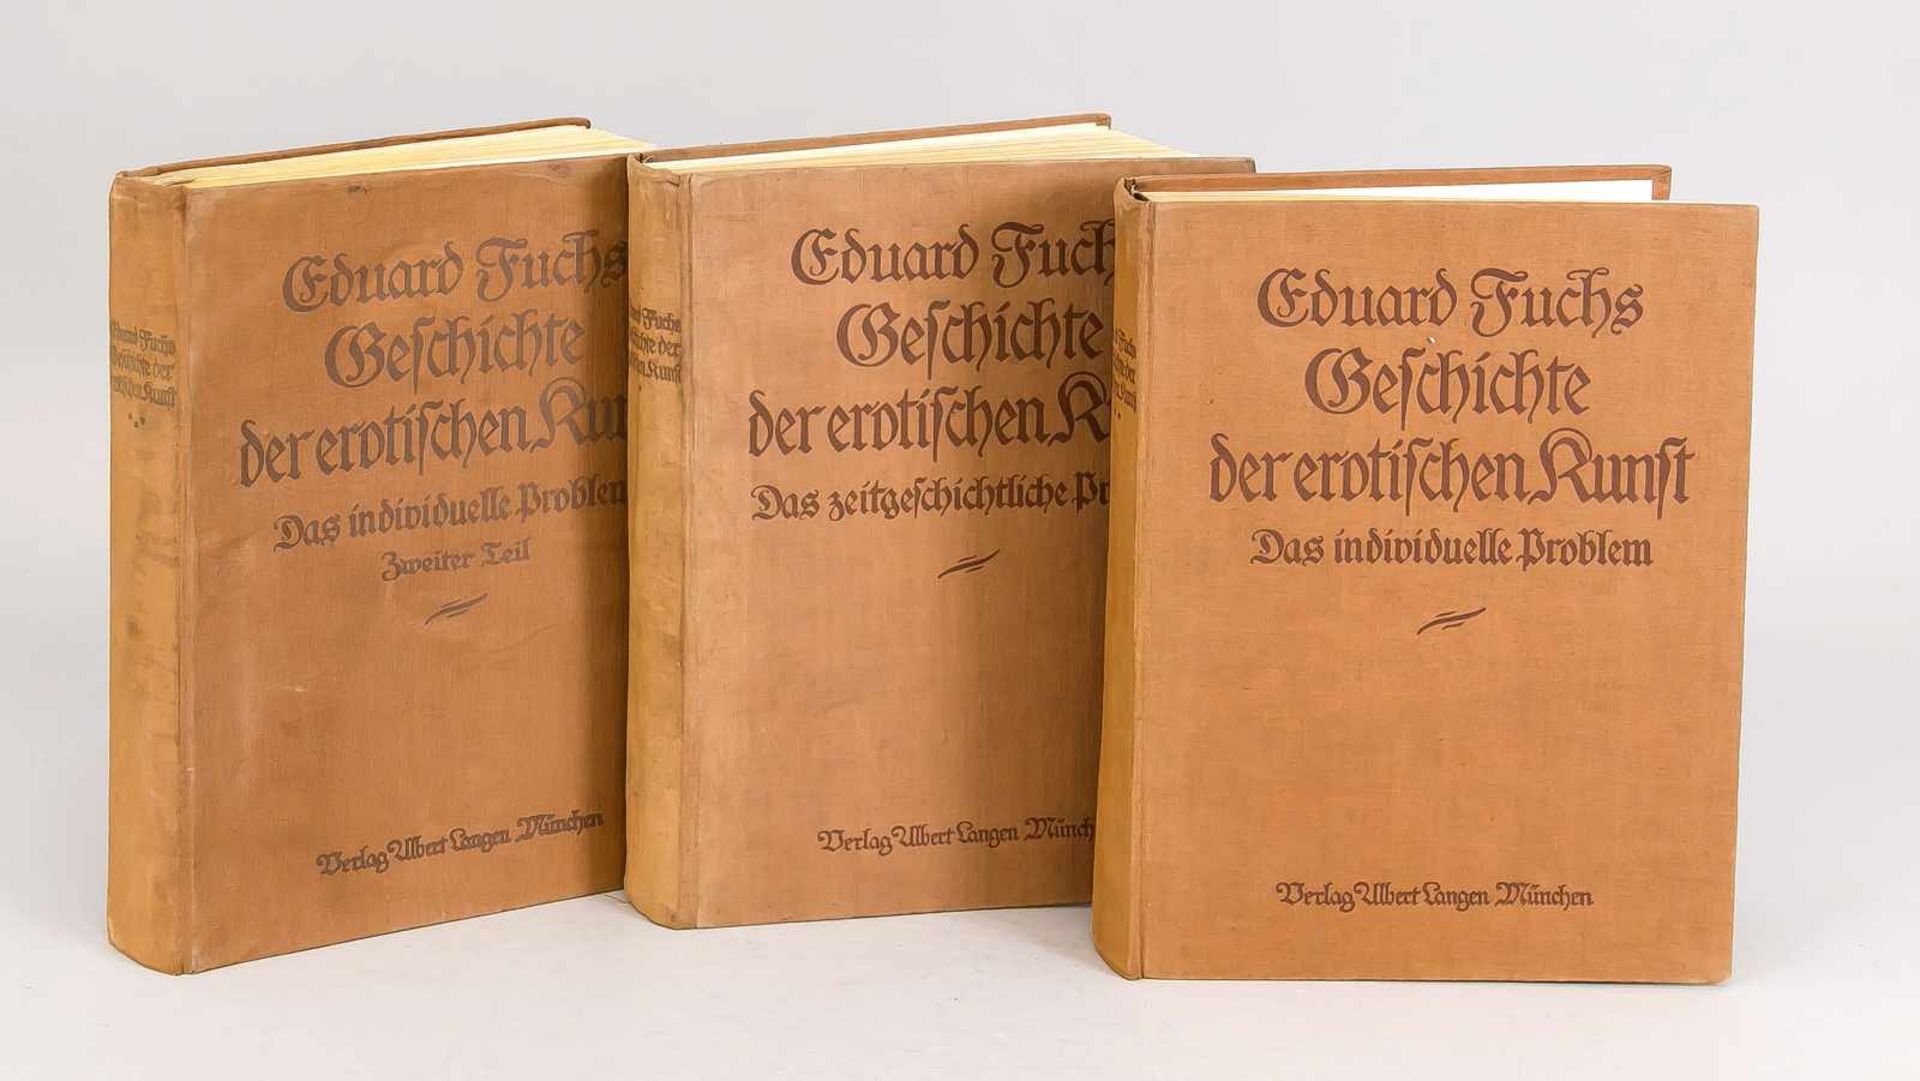 Eduard Fuchs: GEschichte der erotischen Kunst, 3 Bände, München (1908-1923). Das